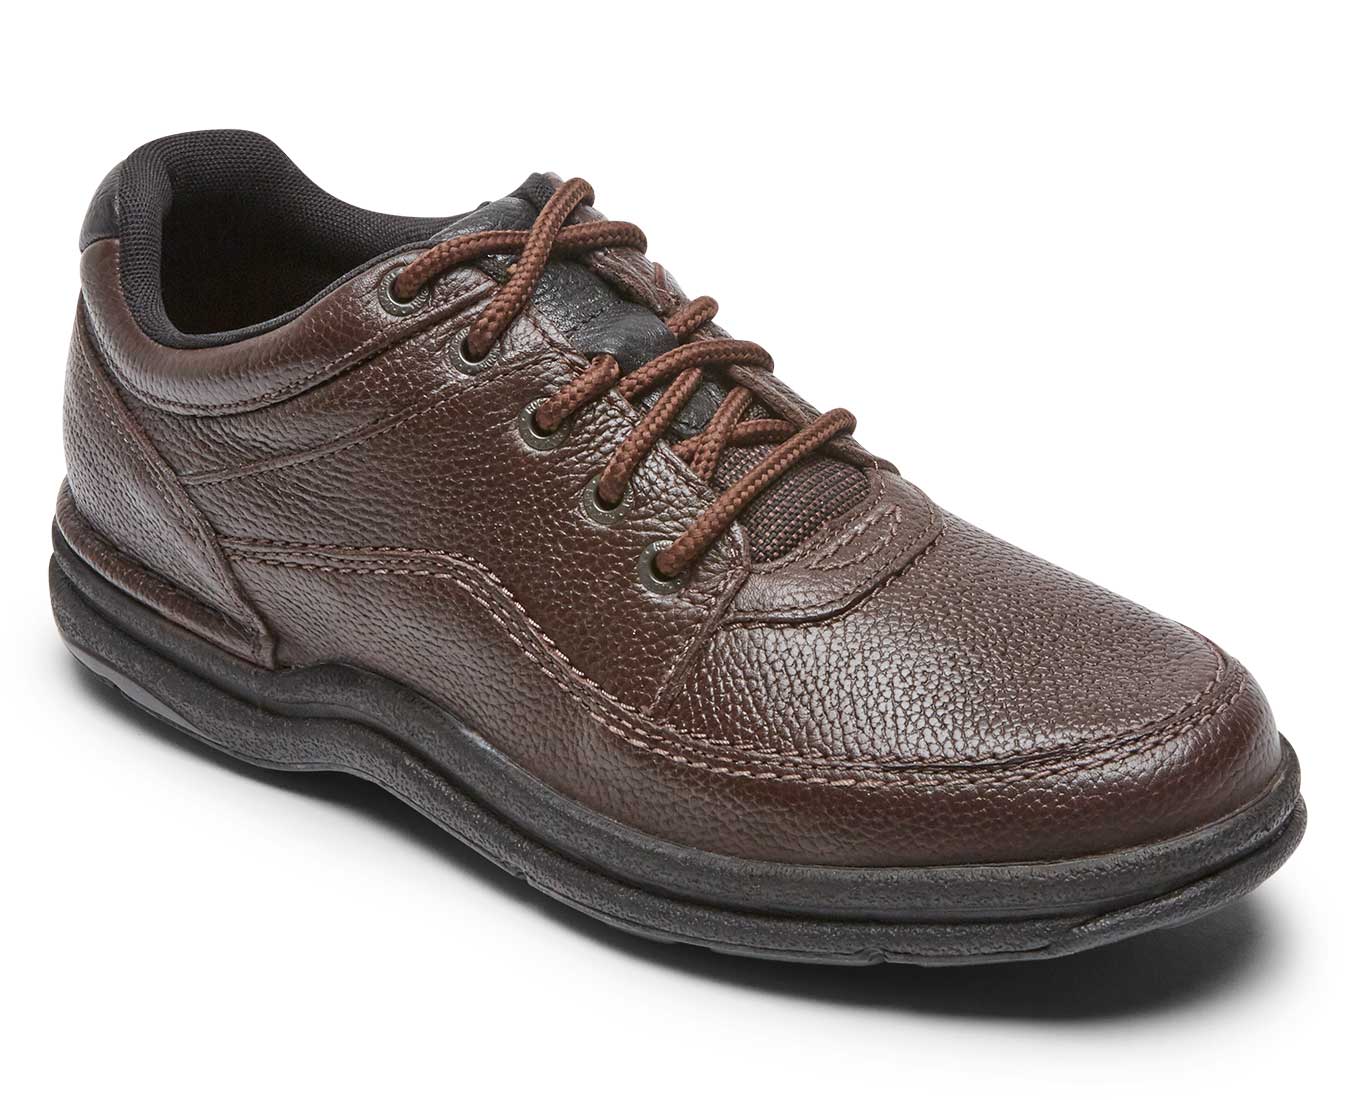 Rockport Men's Shoes Wide